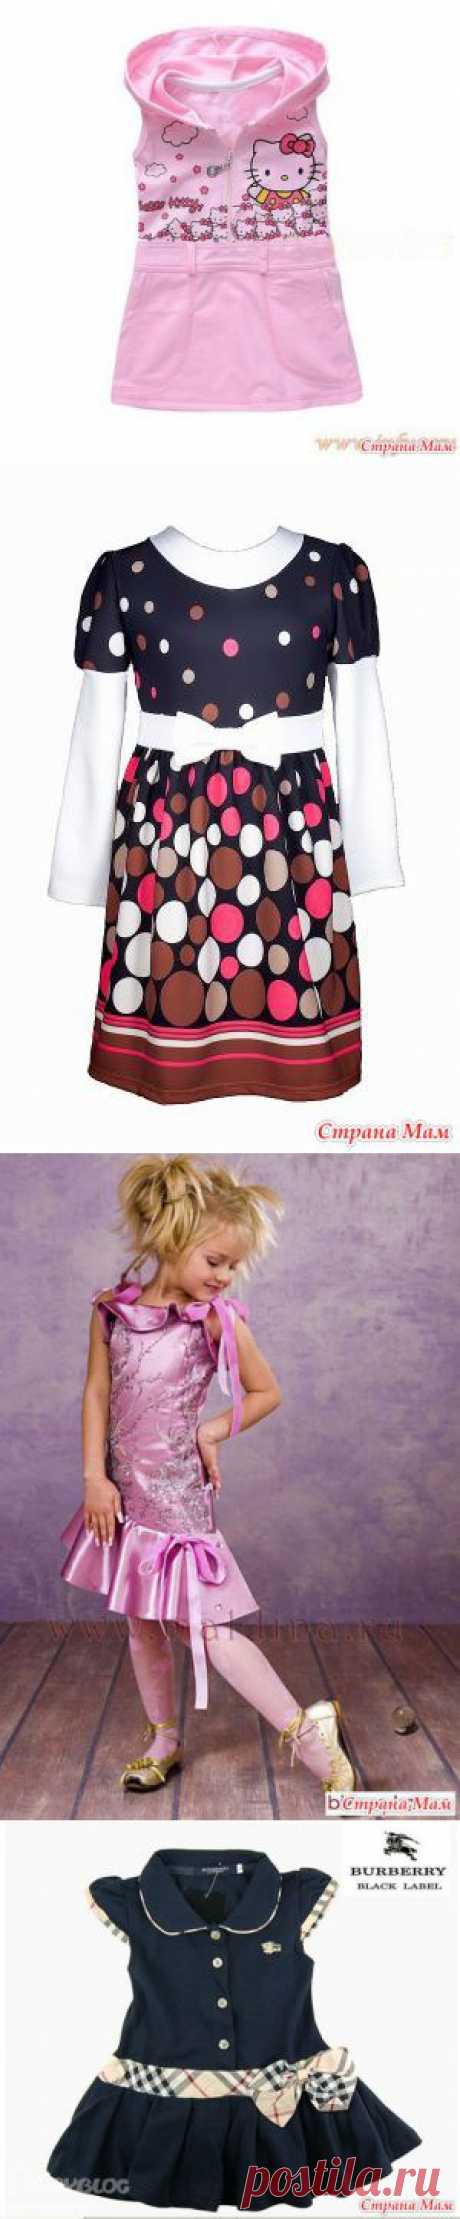 Моделируем детские платья. Часть 3. - Авторские уроки шитья... моделирование, крой, технология - Страна Мам